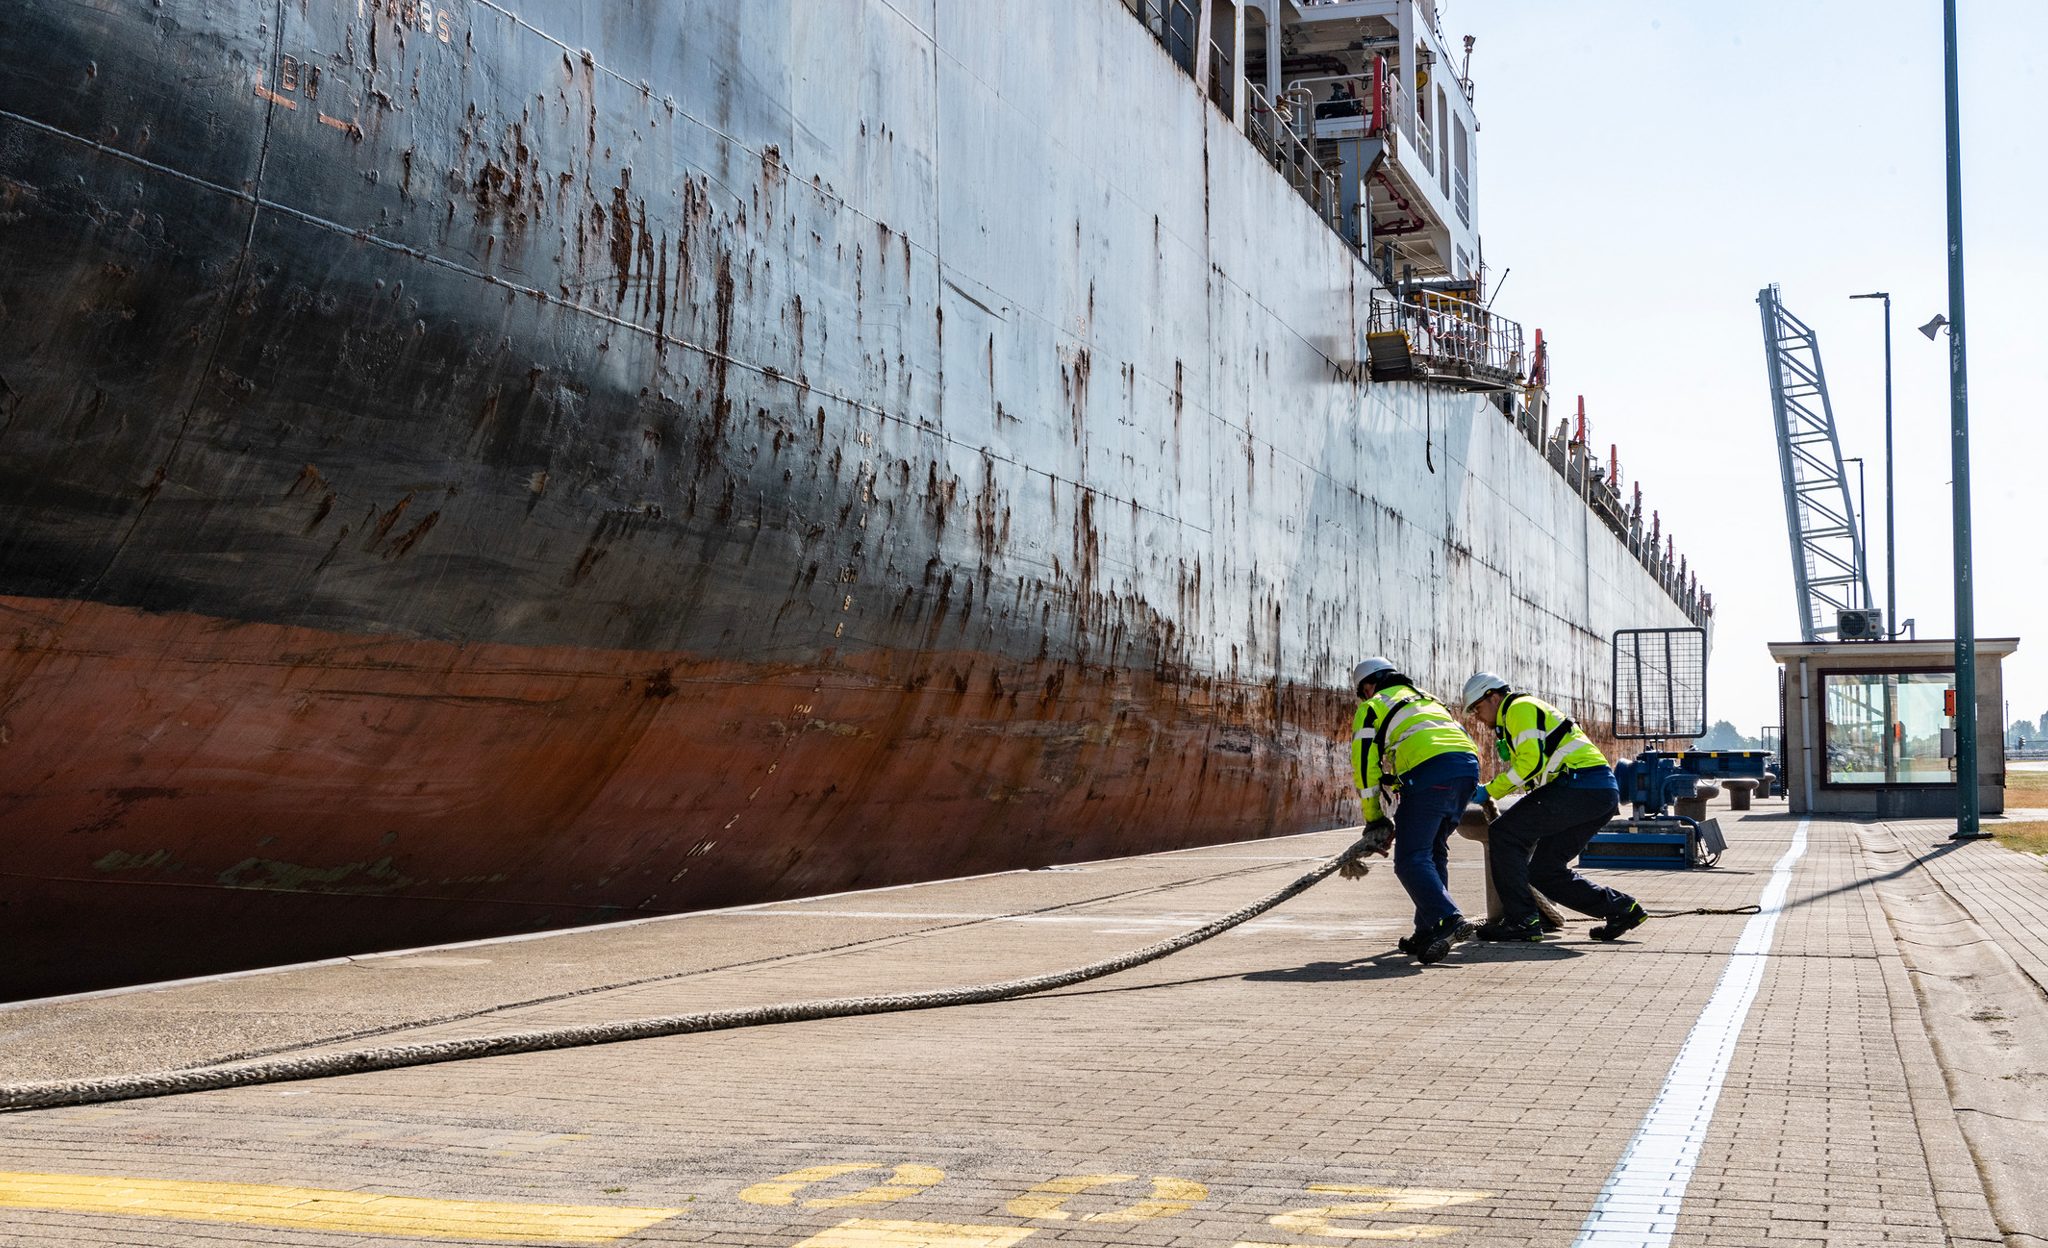 In de afgelopen 9 maanden is de containeroverslag gedaald met 6,5% naar 103,1 miljoen ton.